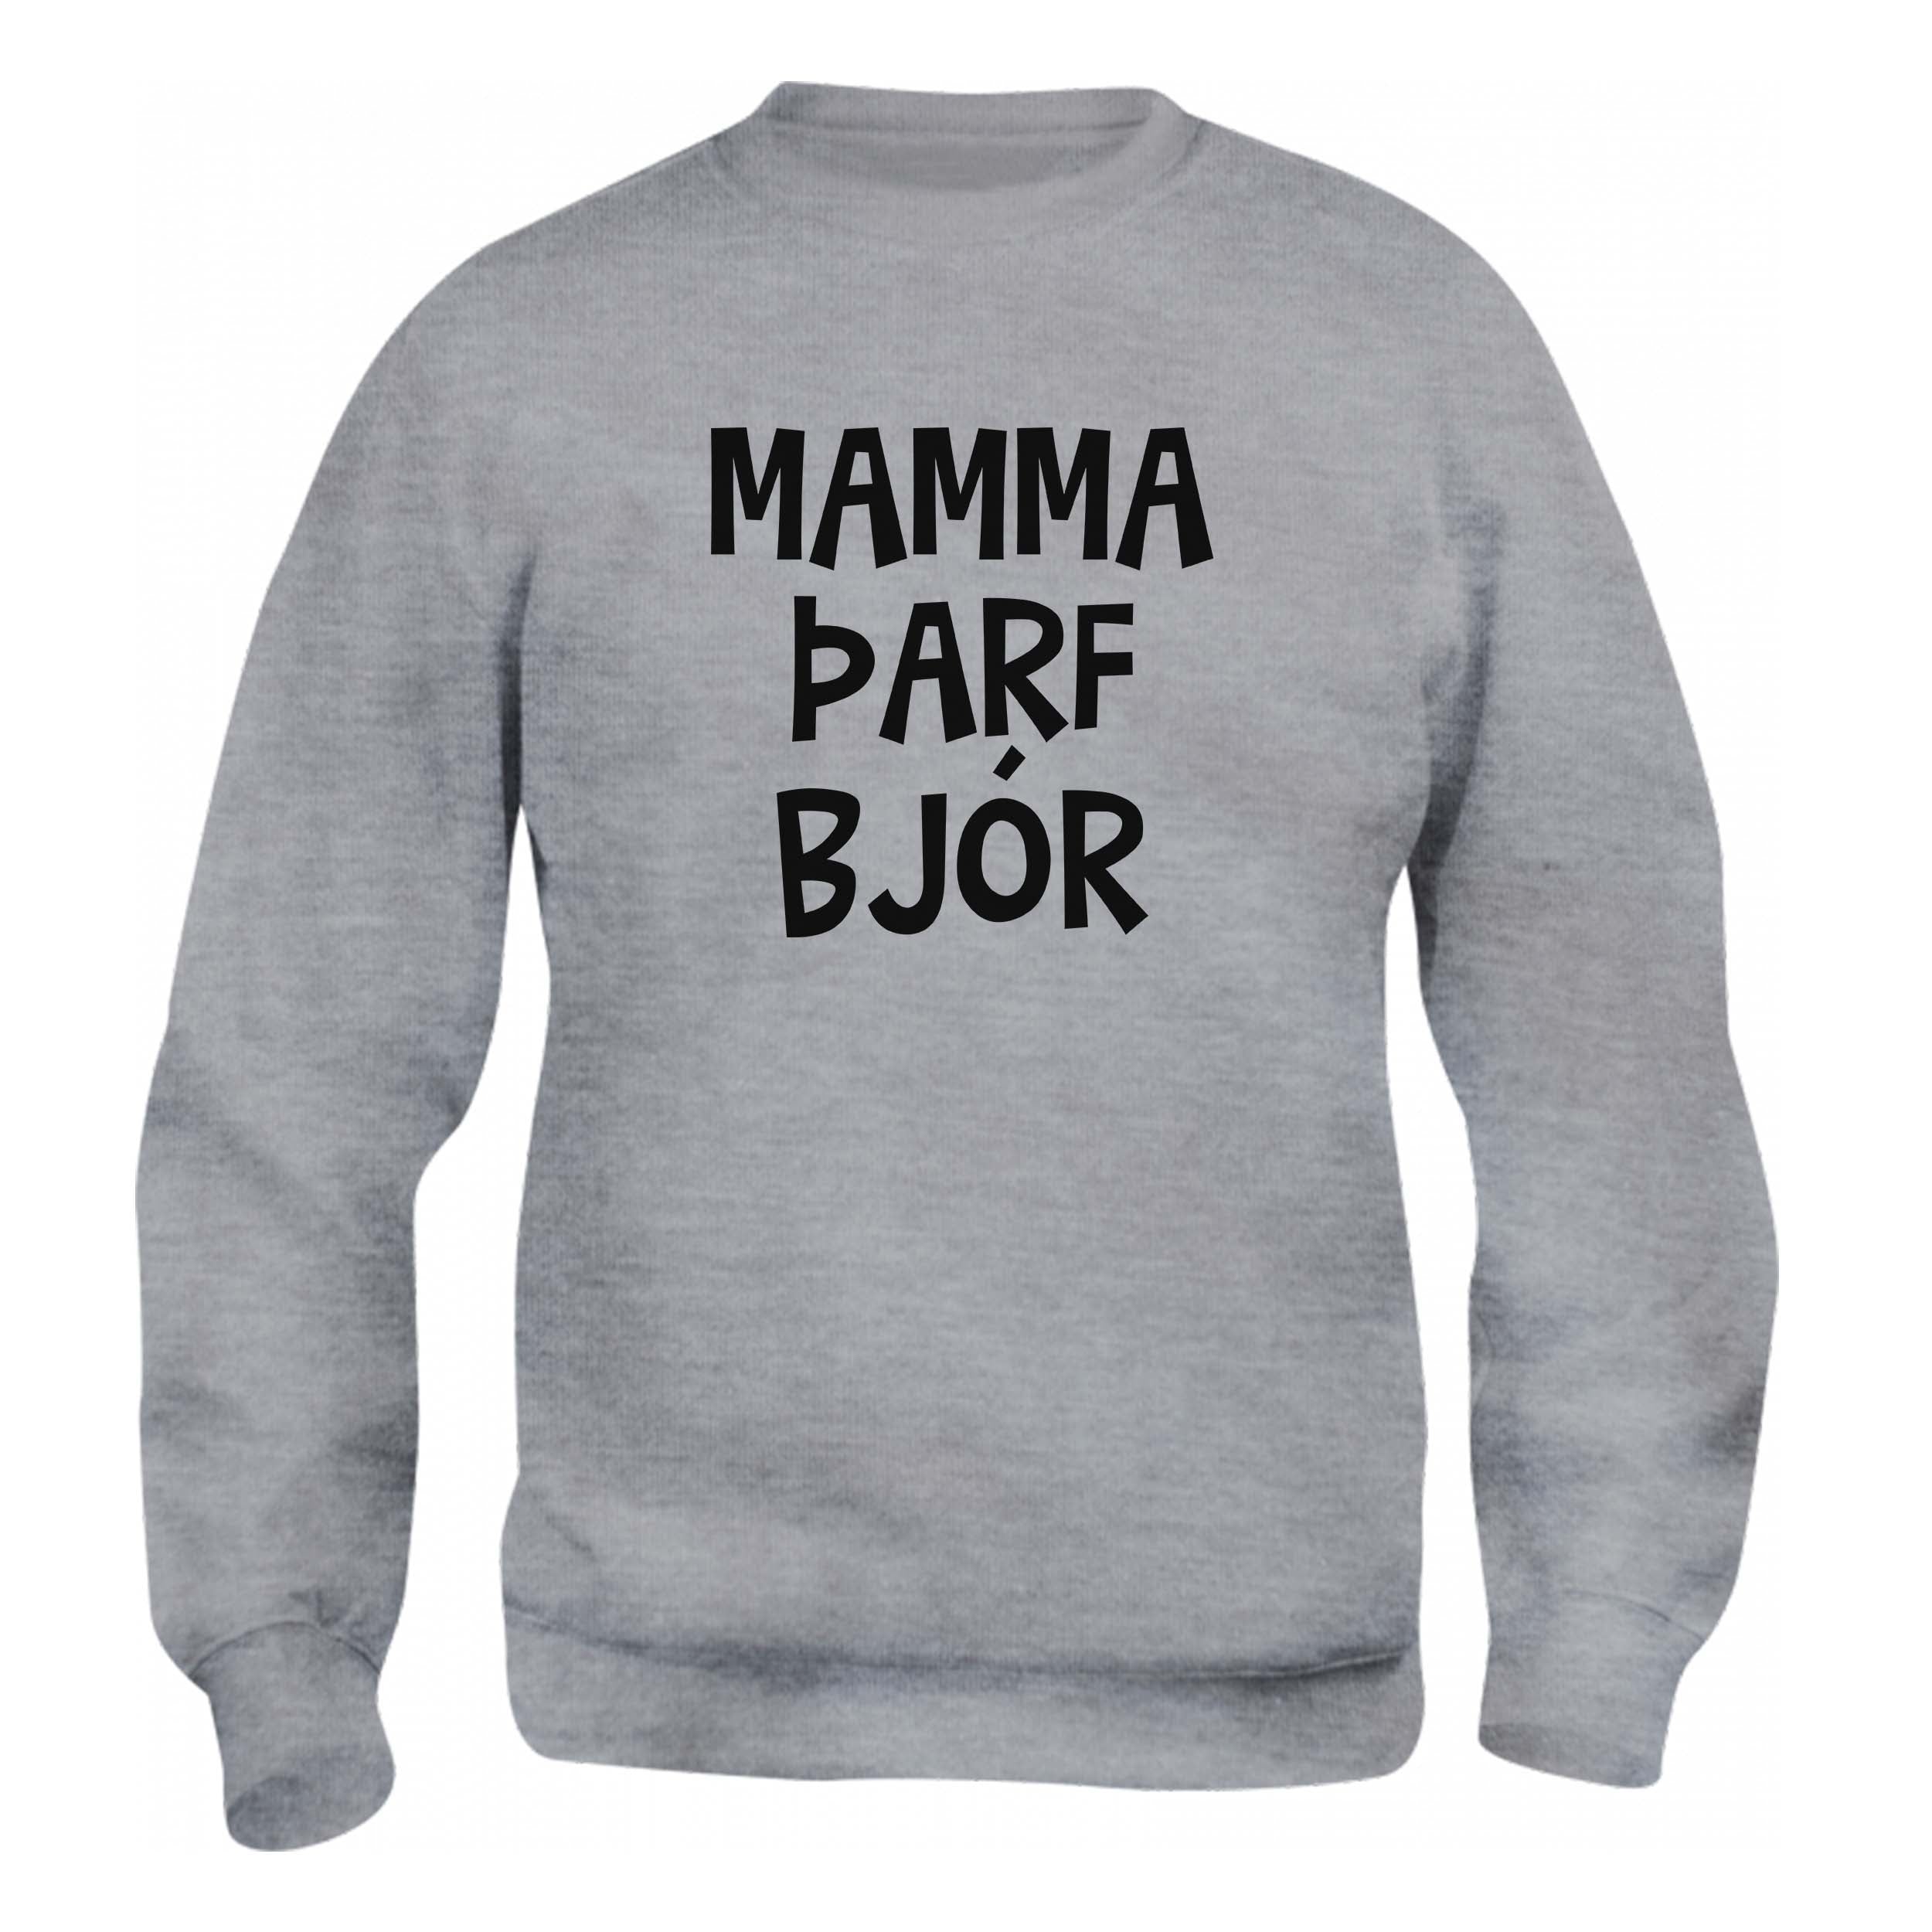 MAMMA ÞARF BJÓR - Peysa - Grá